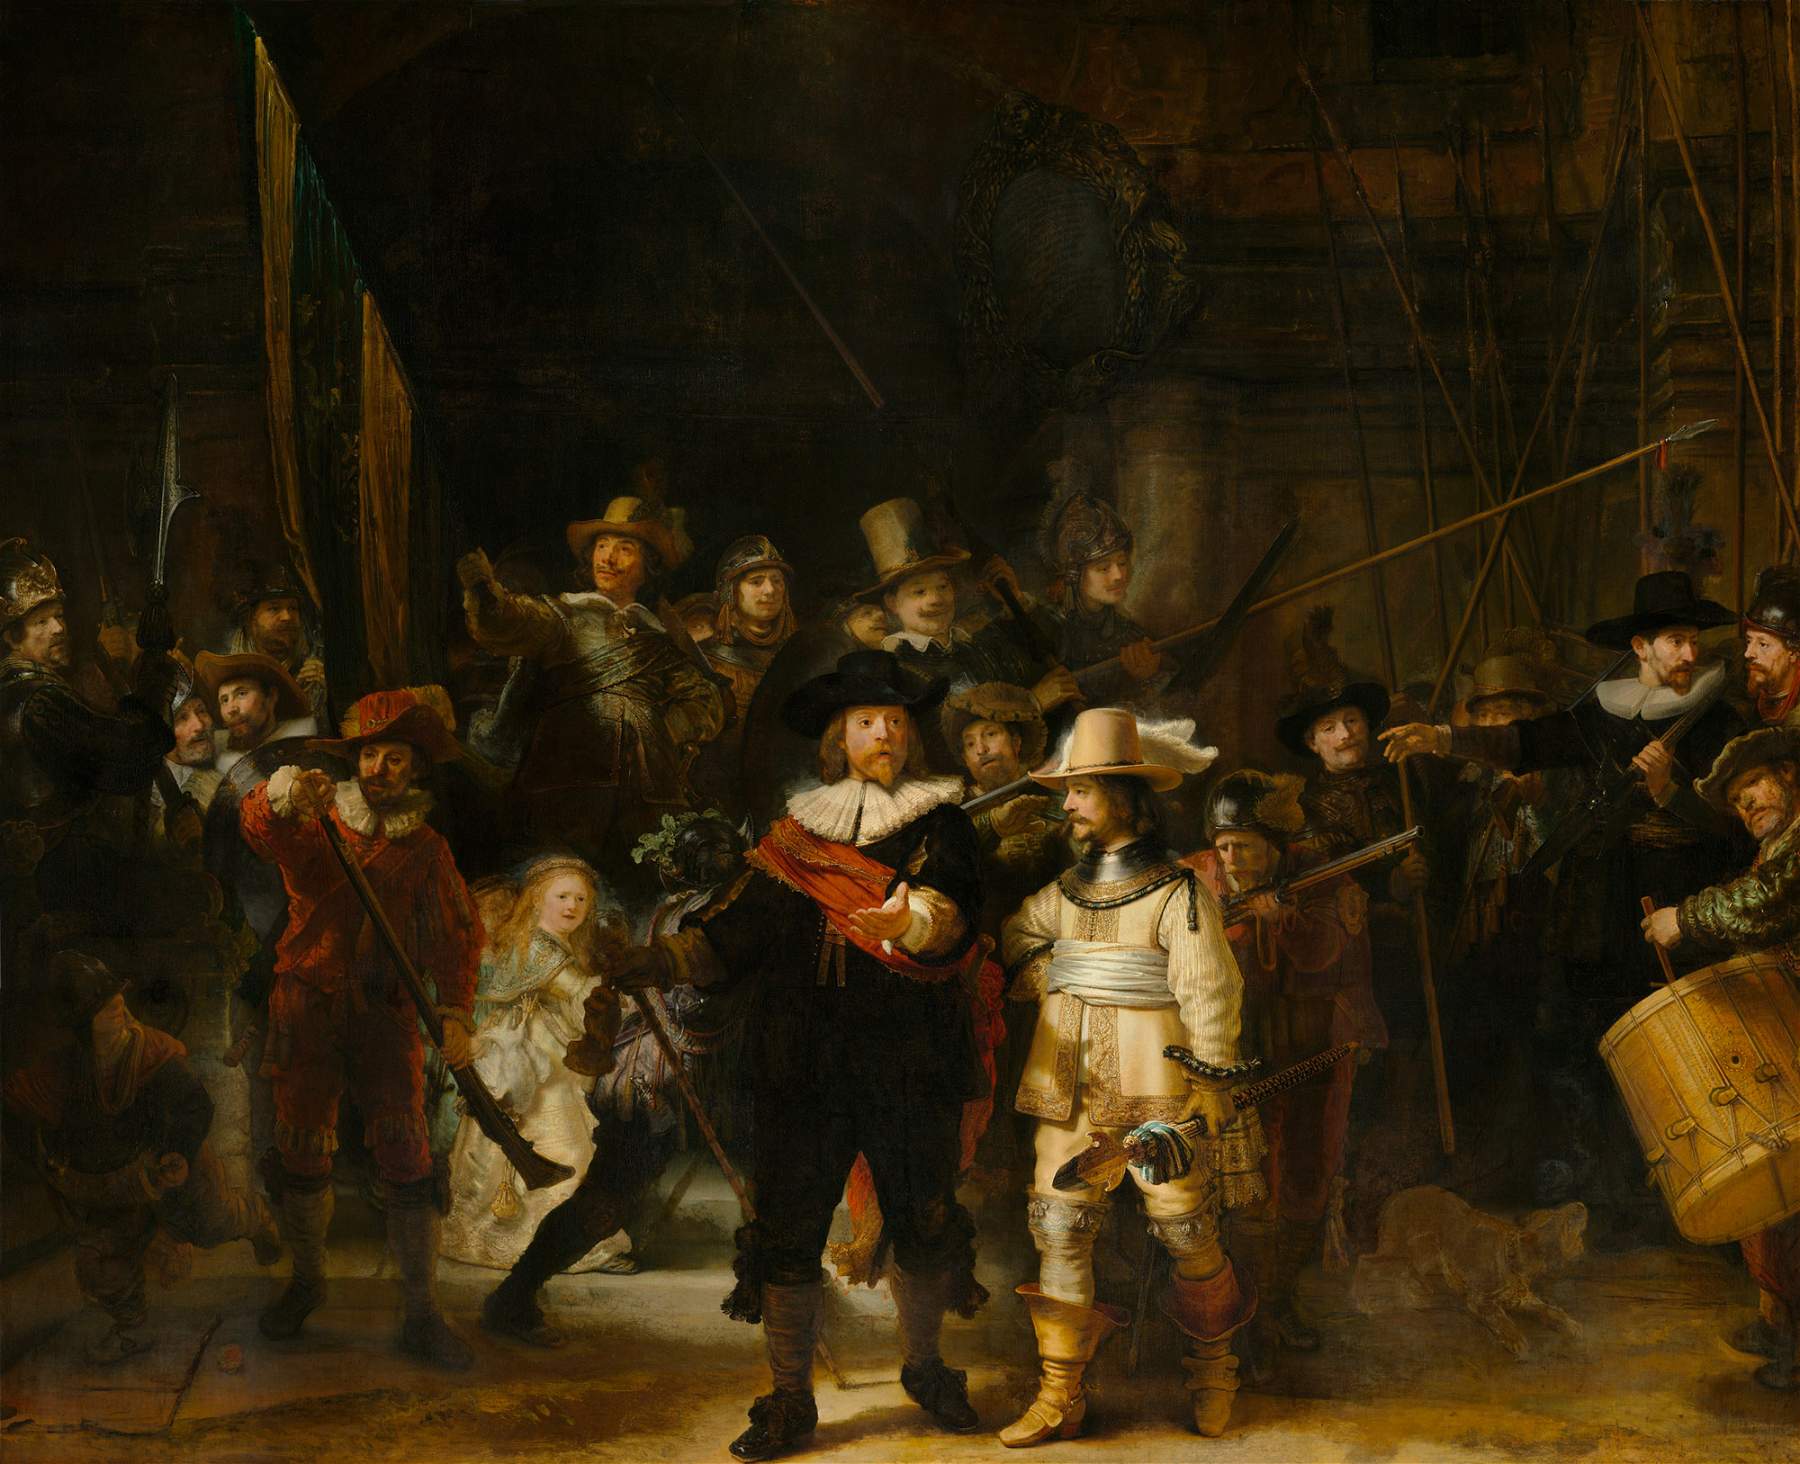 Dessin préparatoire découvert sous la Ronde de nuit, le chef-d'œuvre de Rembrandt